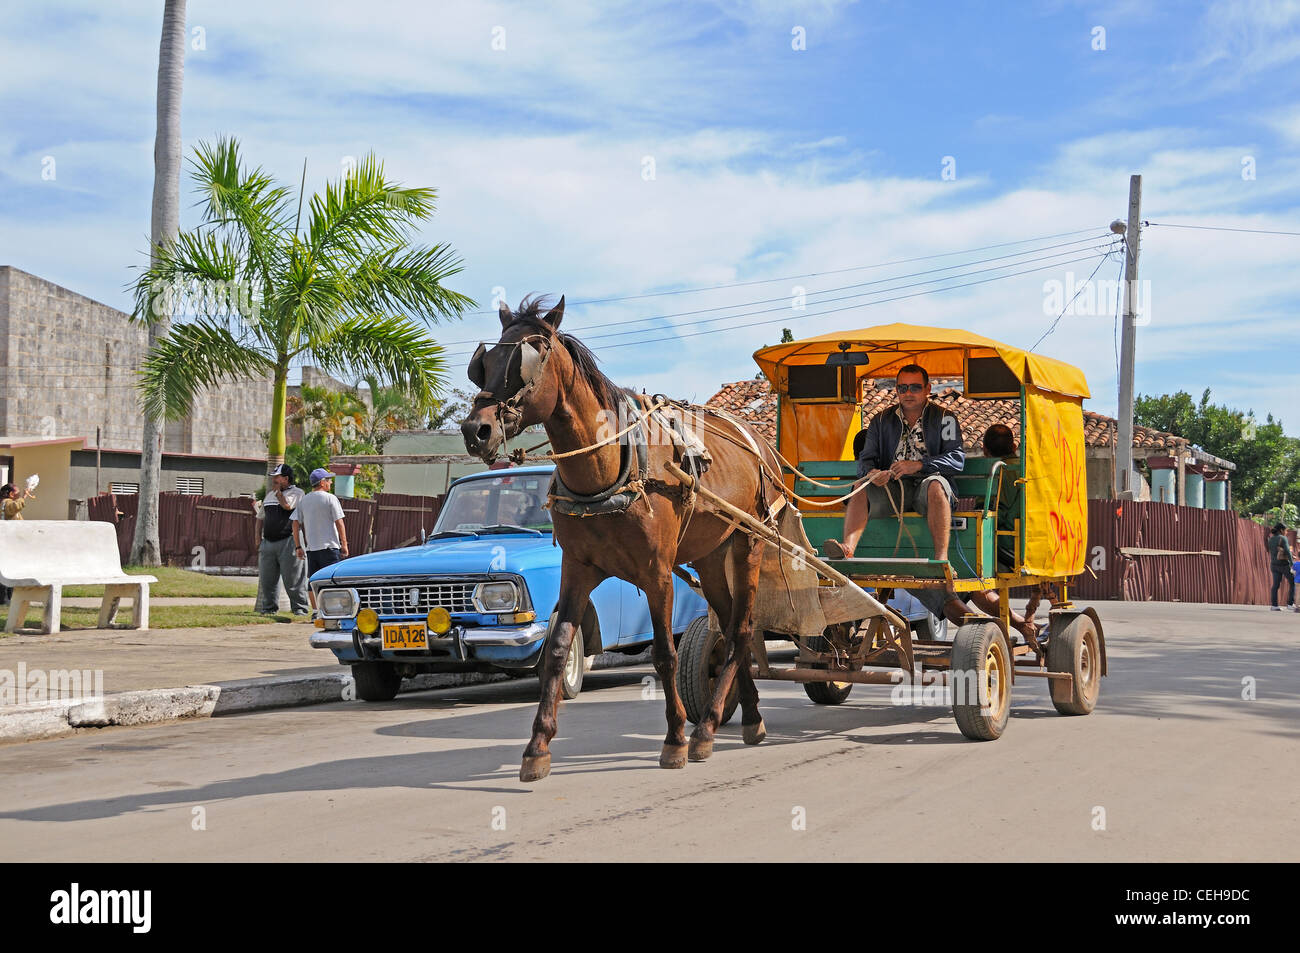 Isla de Pinos, Coach horse with cart, Cuba, Caribbean Stock Photo